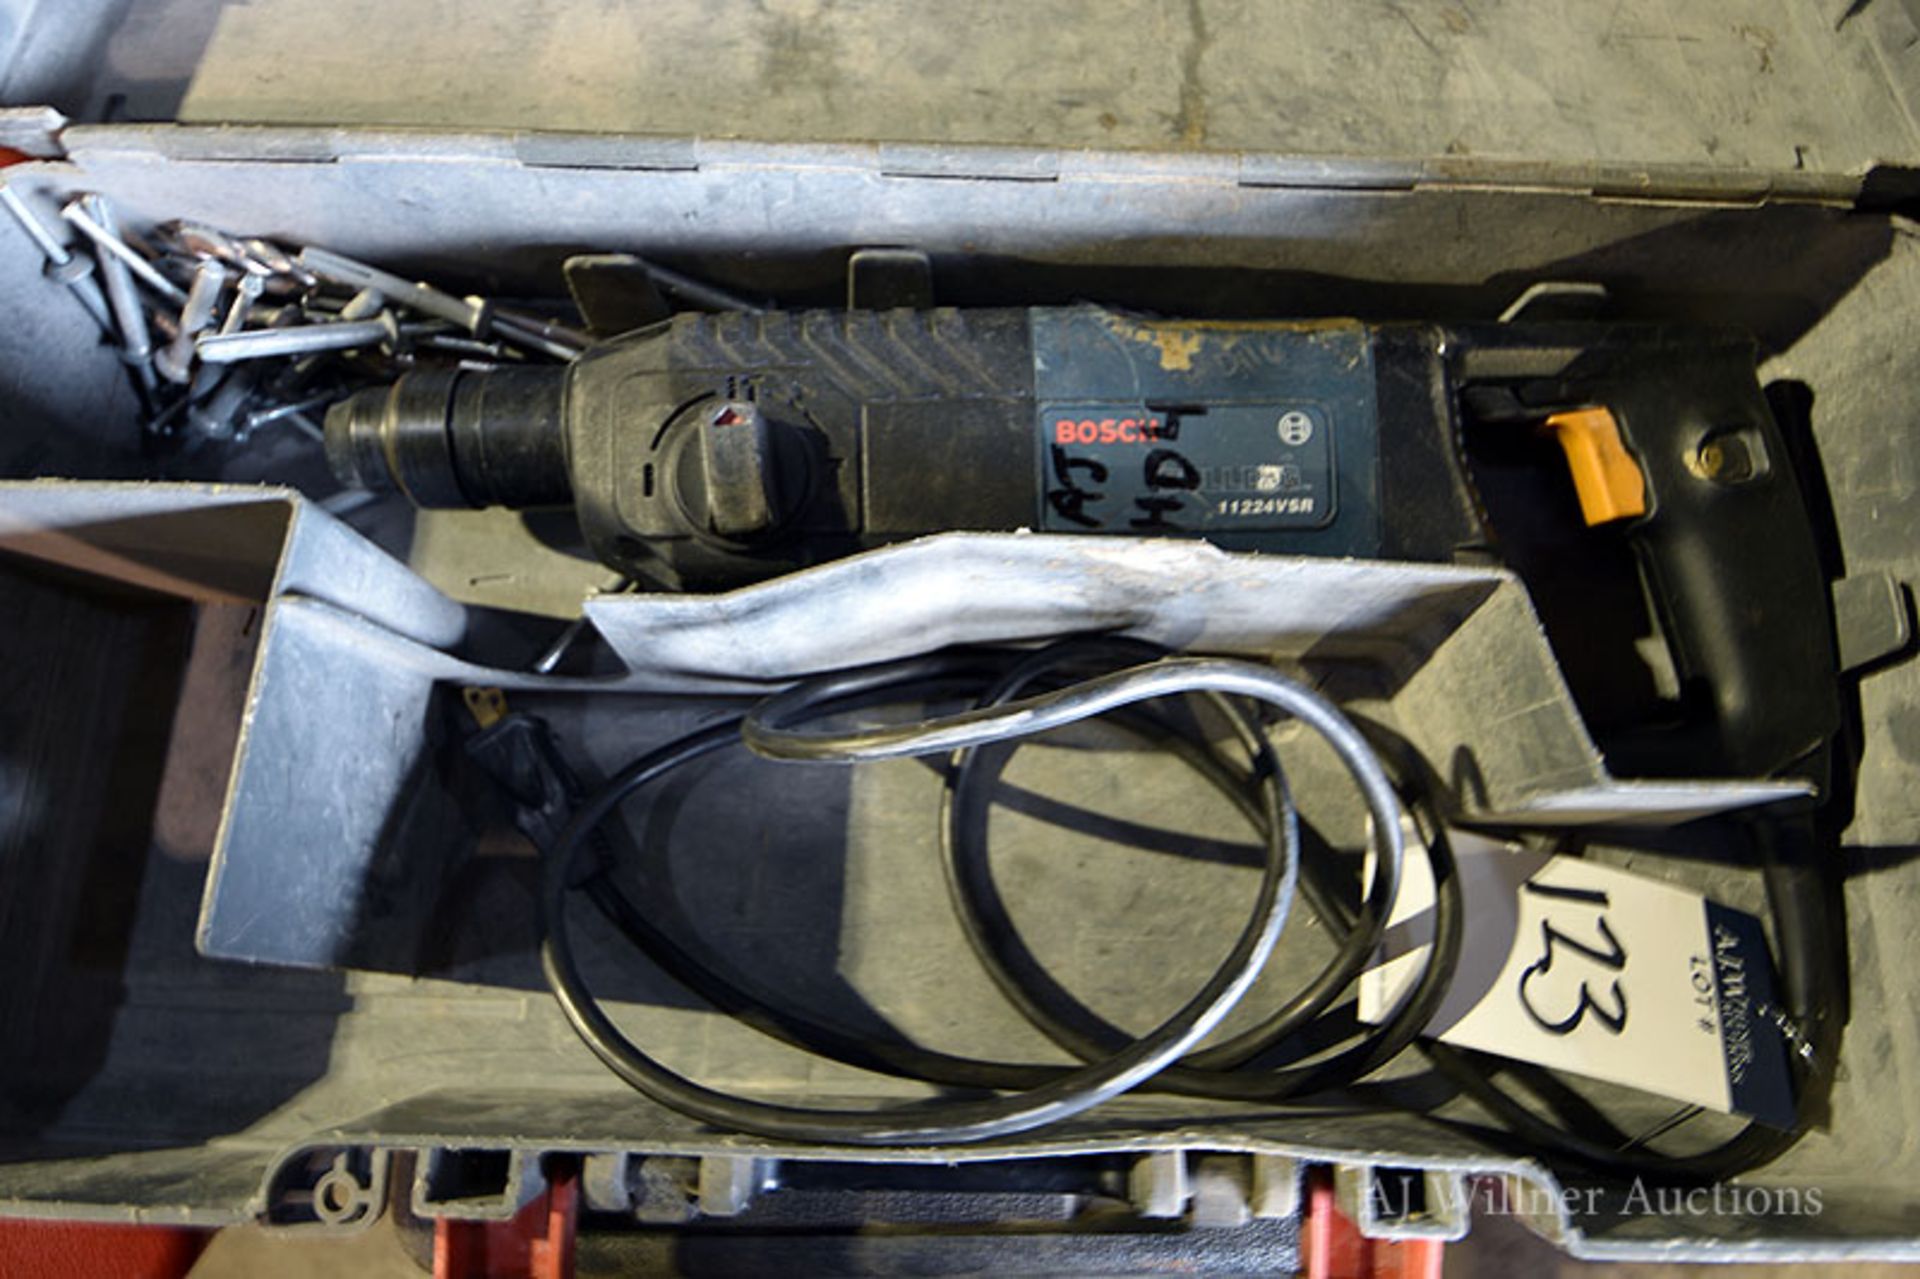 Bosch 11224VSR Bulldog Hammer Drill